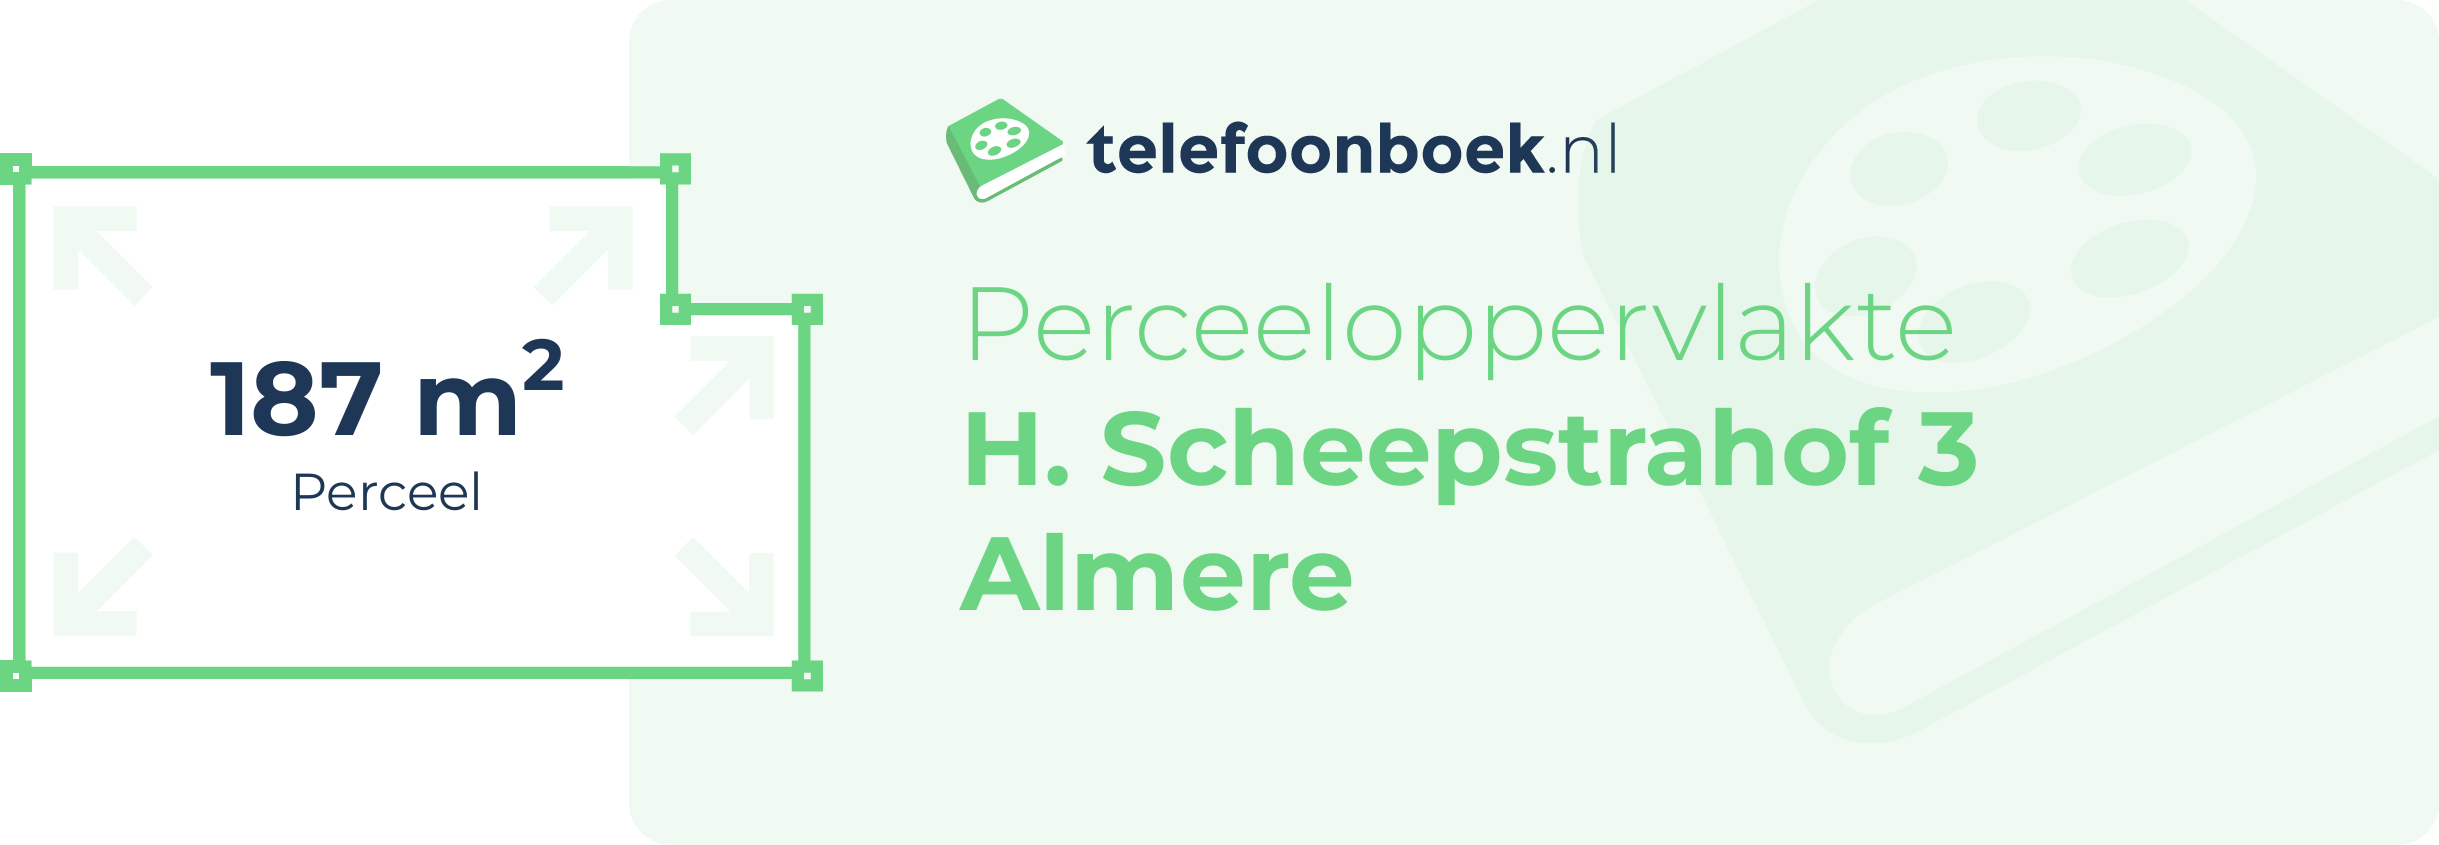 Perceeloppervlakte H. Scheepstrahof 3 Almere